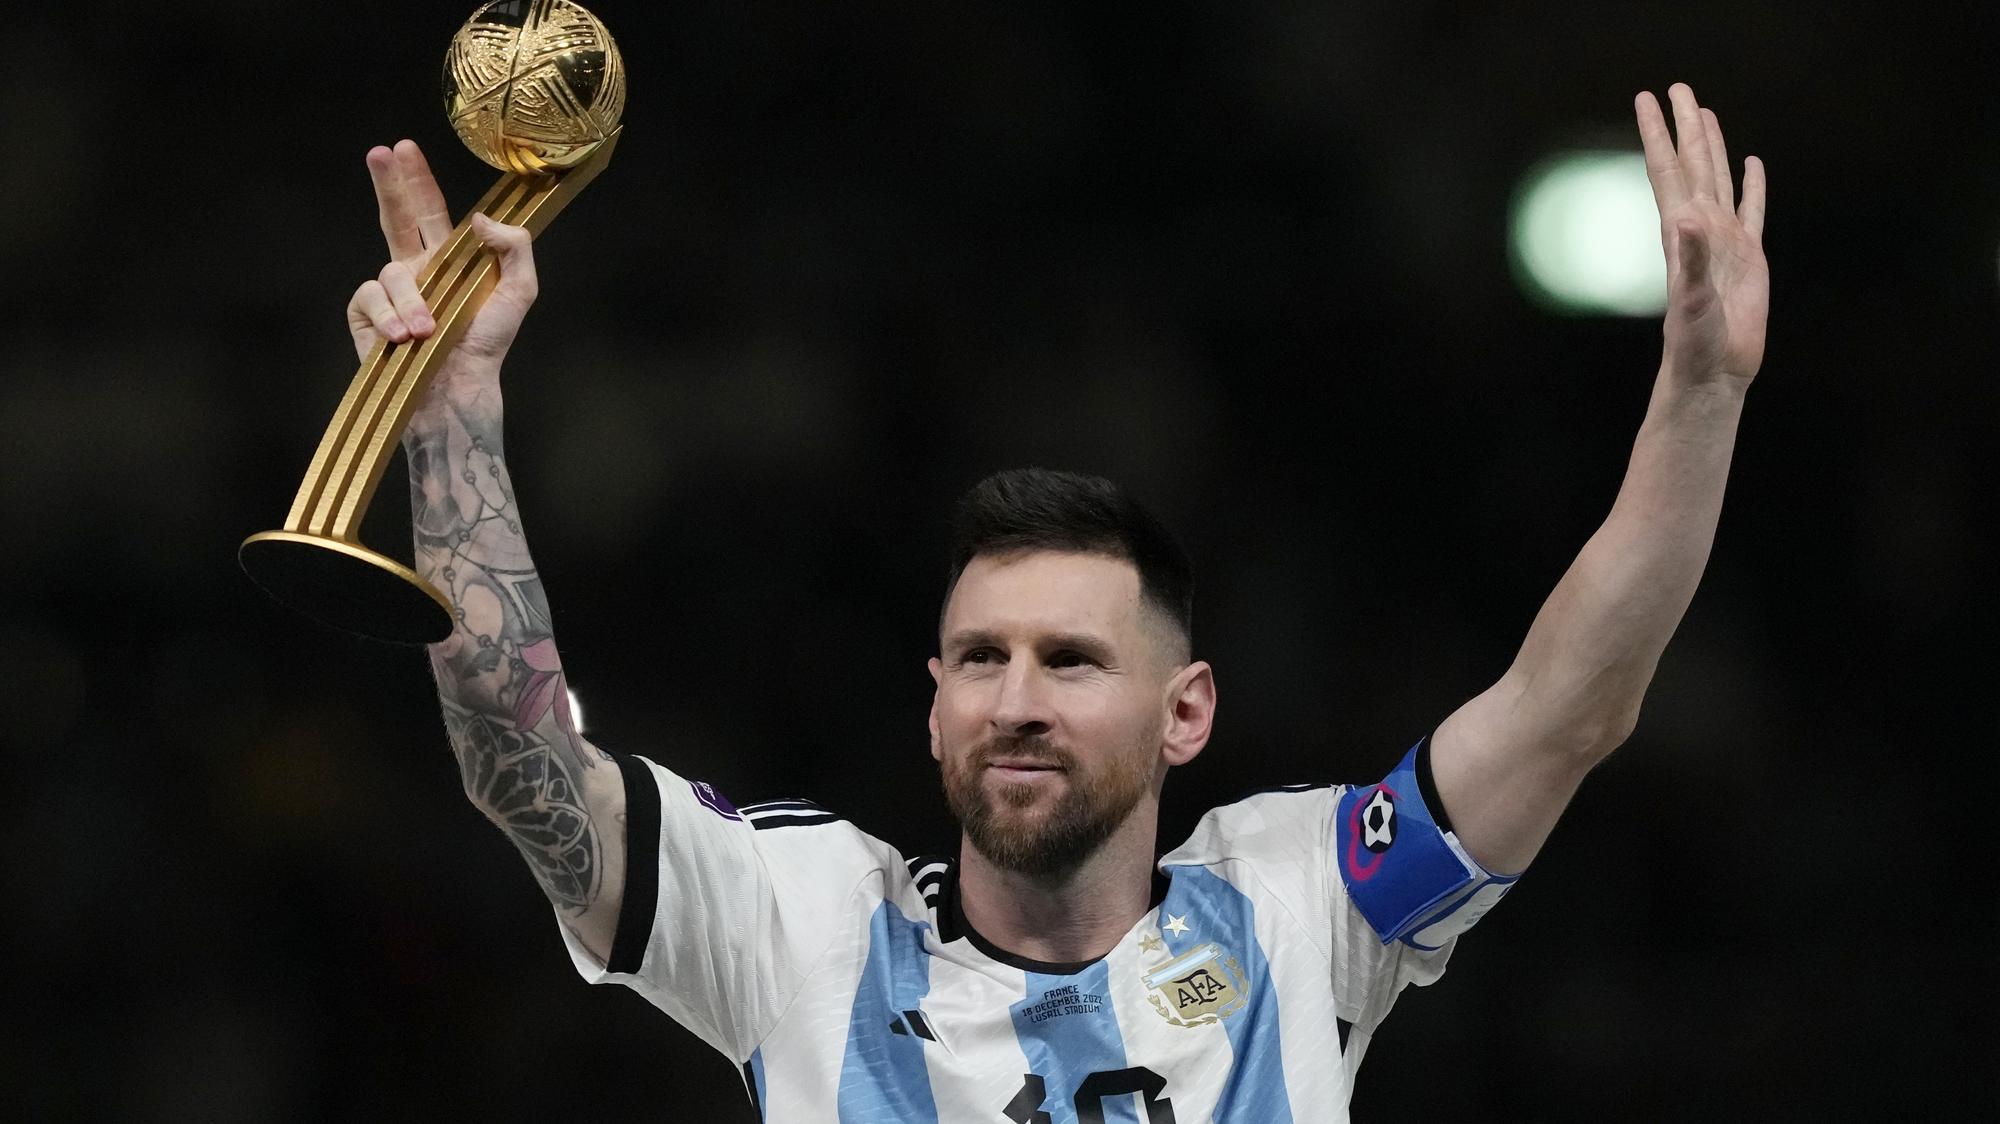 Lionel Messi ešte nevidel záznam z finále MS, skrat oľutoval | Šport.sk